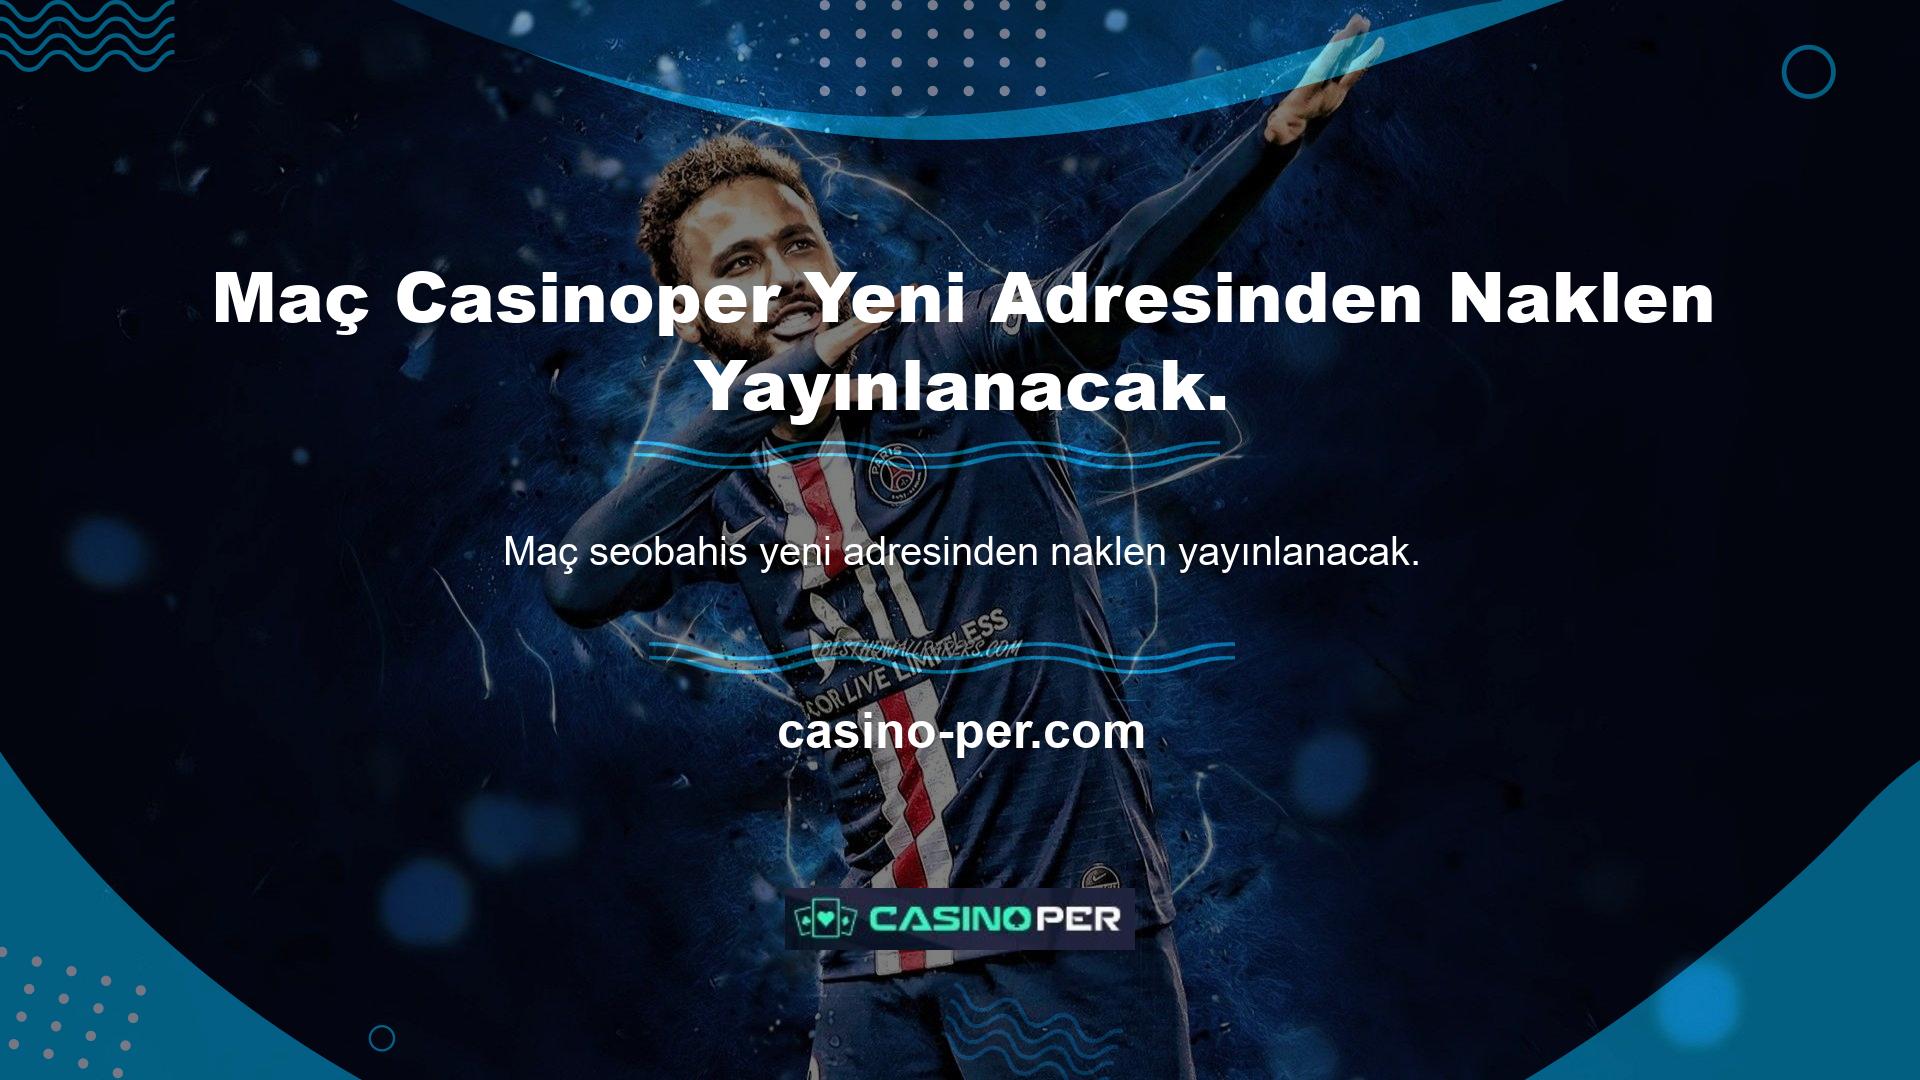 Casinoper yeni giriş adresi Casinoper, bu sitenin sporseverlere ve meraklılarına sunduğu hizmetleri etkilemeyecektir